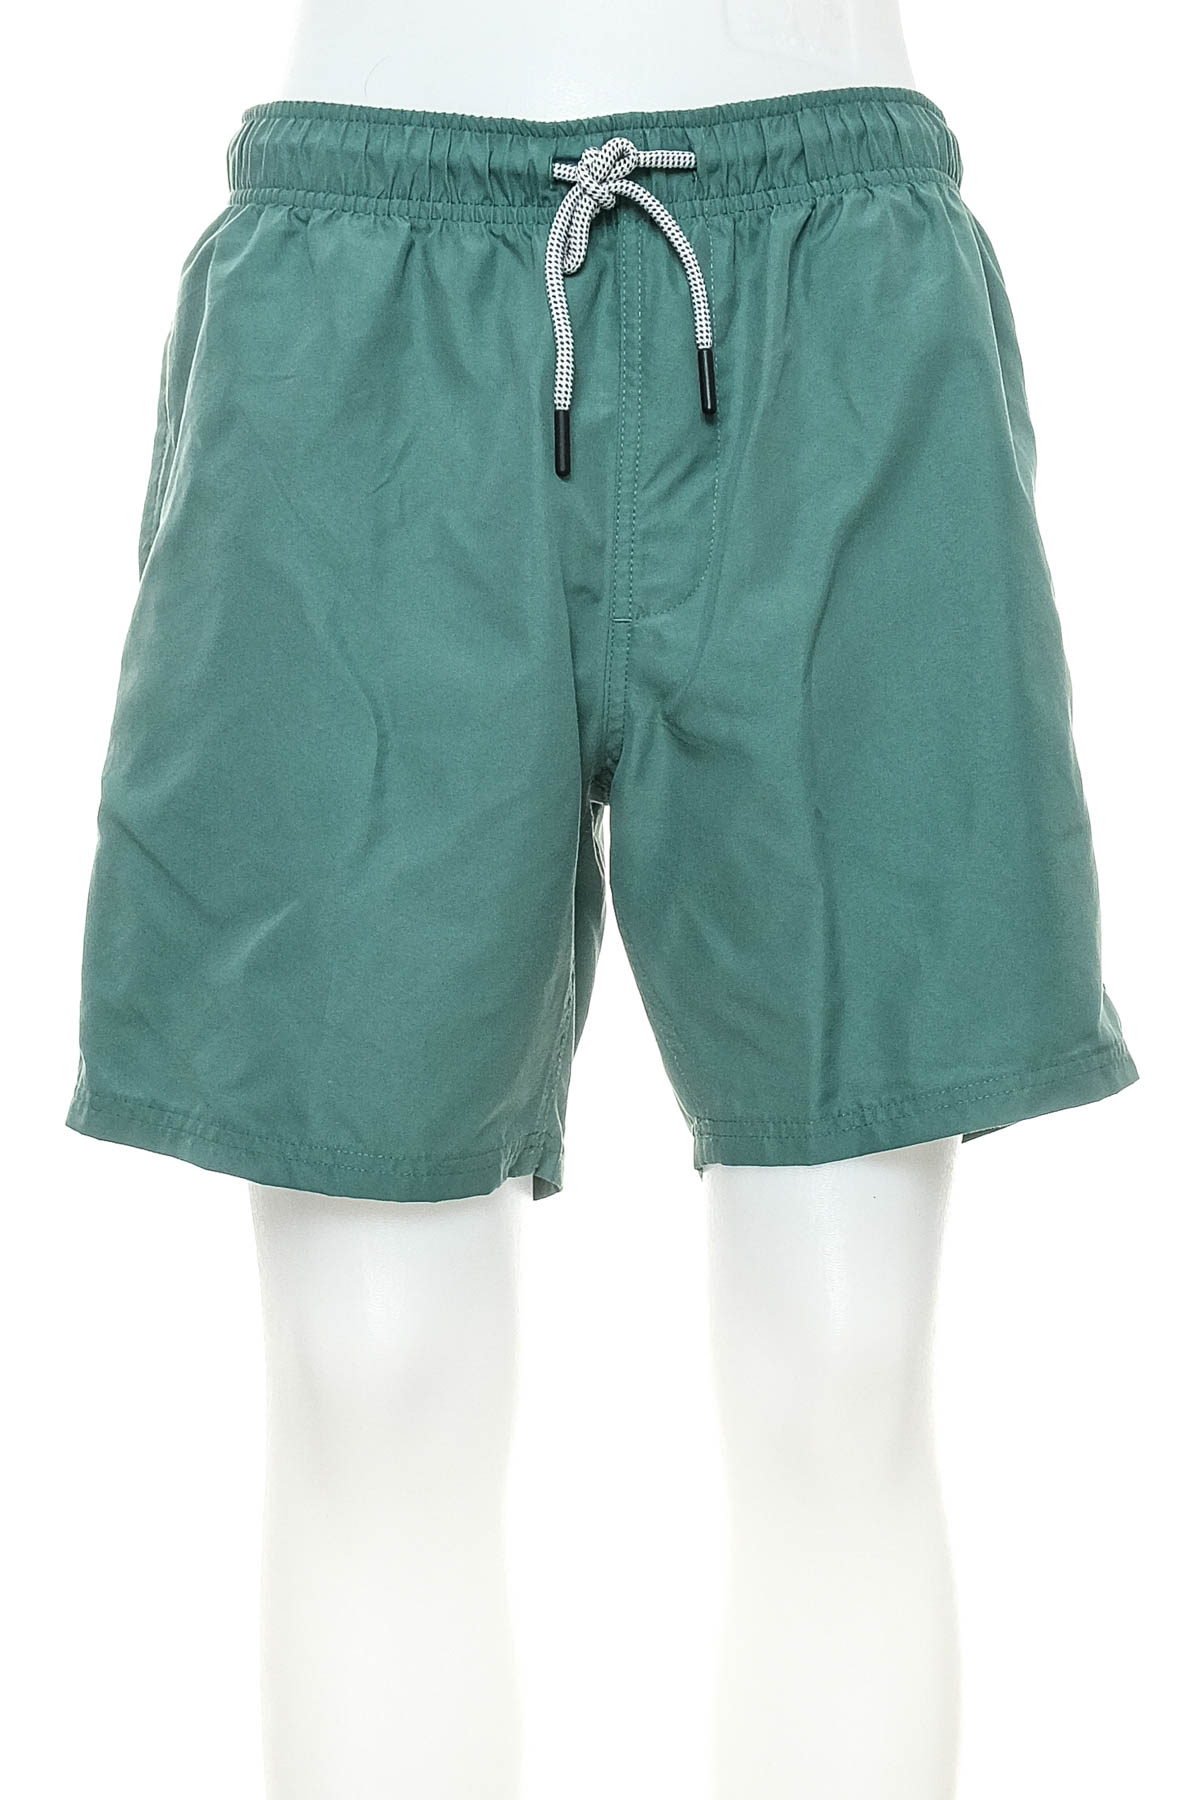 Men's shorts - Anko - 0